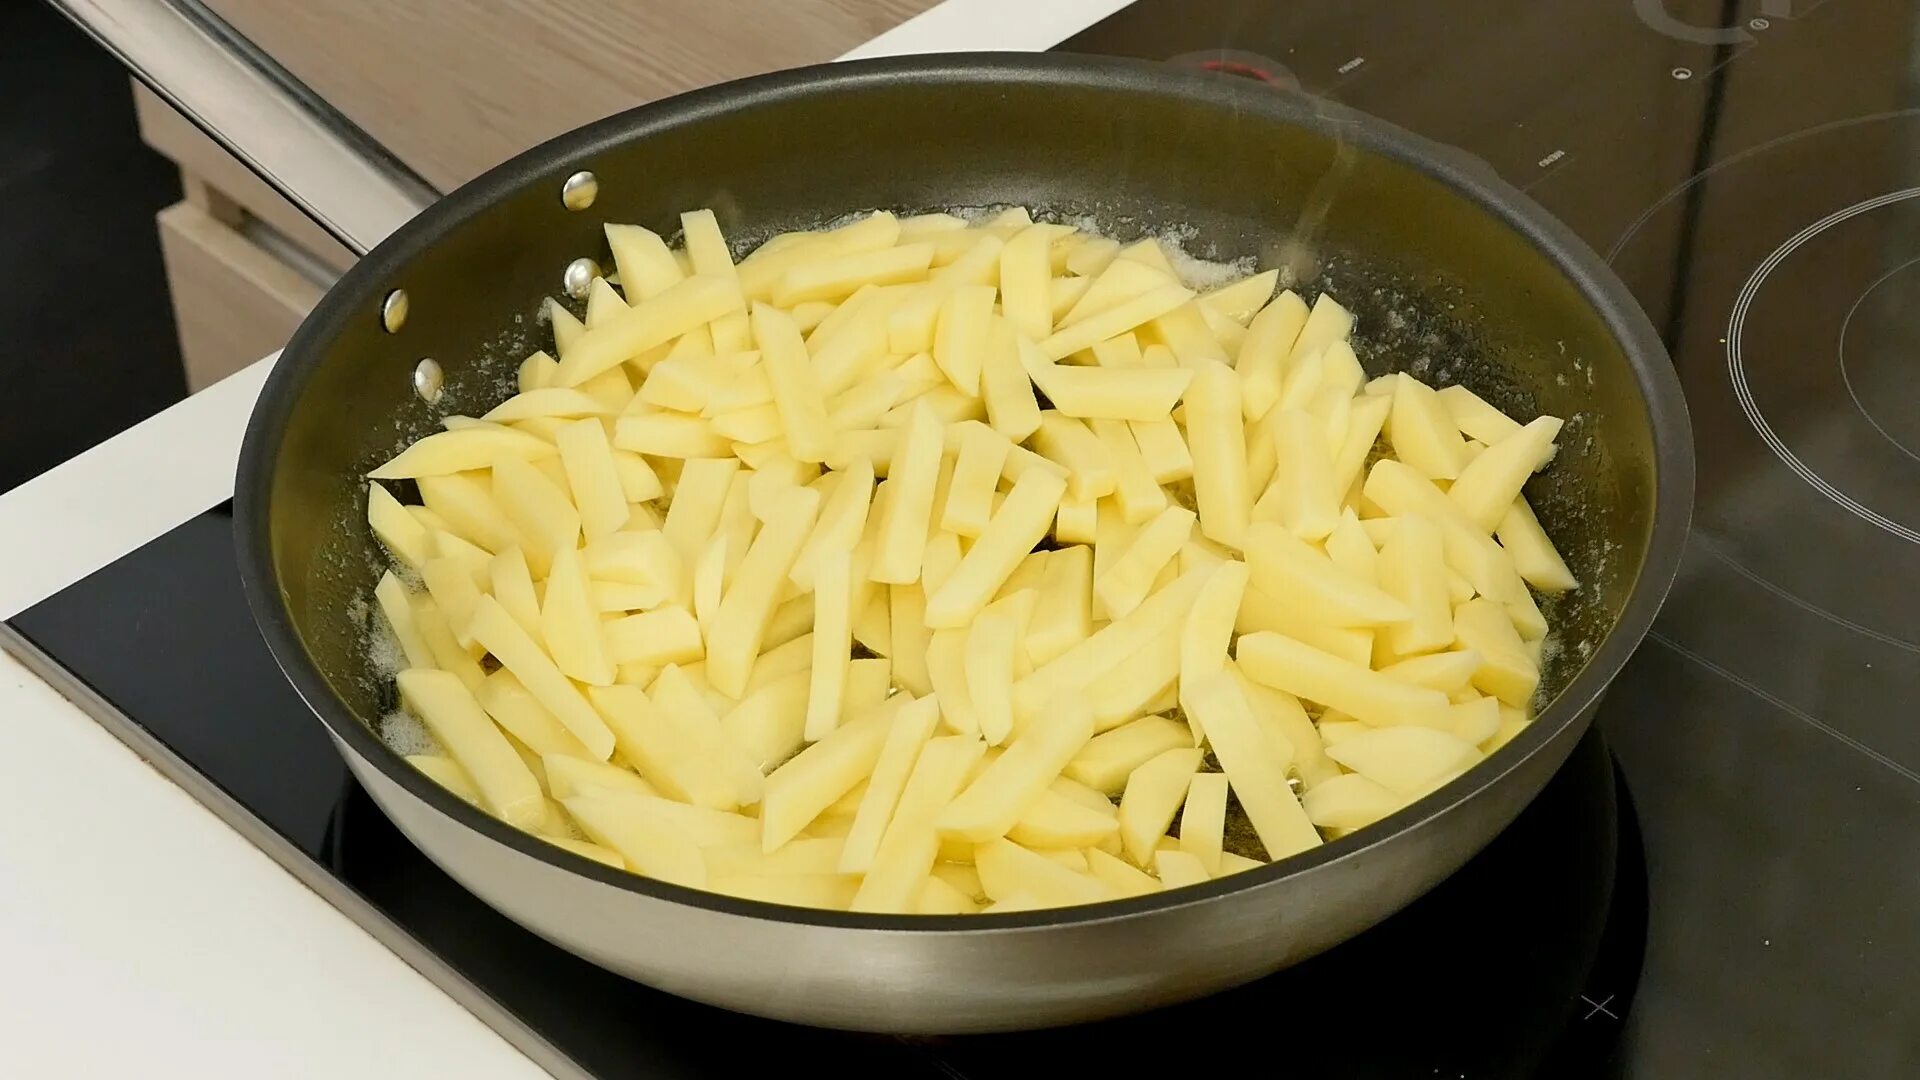 Картошка на сливочном масле на сковороде. Жареная картошка на сковороде. Картошка в плоской сковородке. Жареная картошка на сливочном масле на сковороде. Картофель для жарки зеленый.